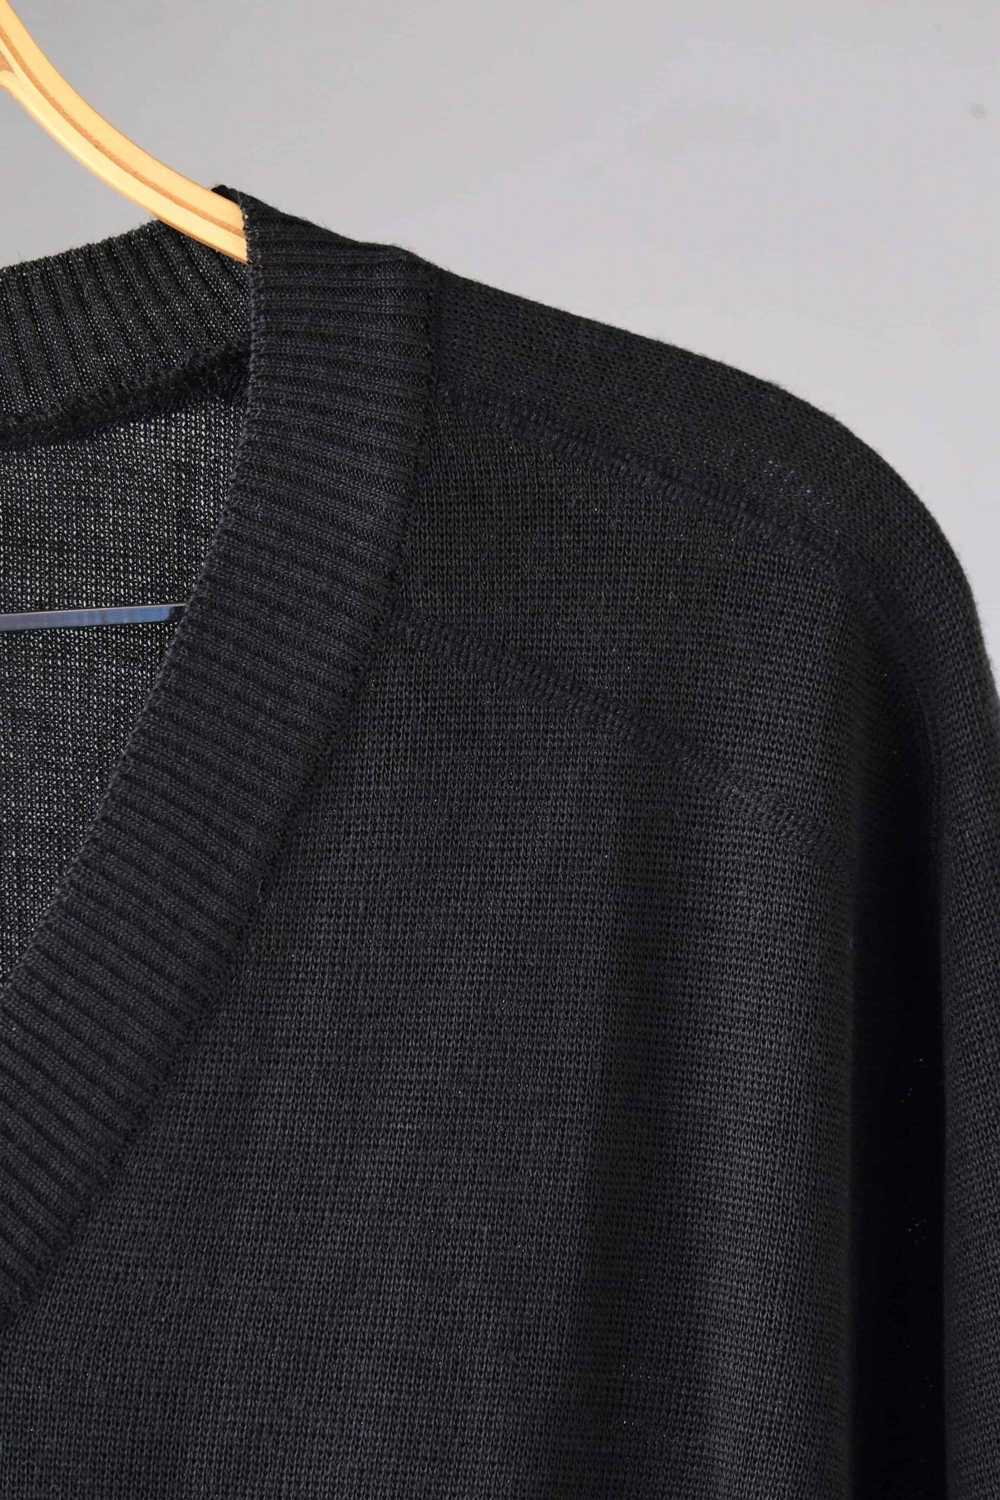 LÖFFLER 80's Solid Black V-Neck Sweater - image 2